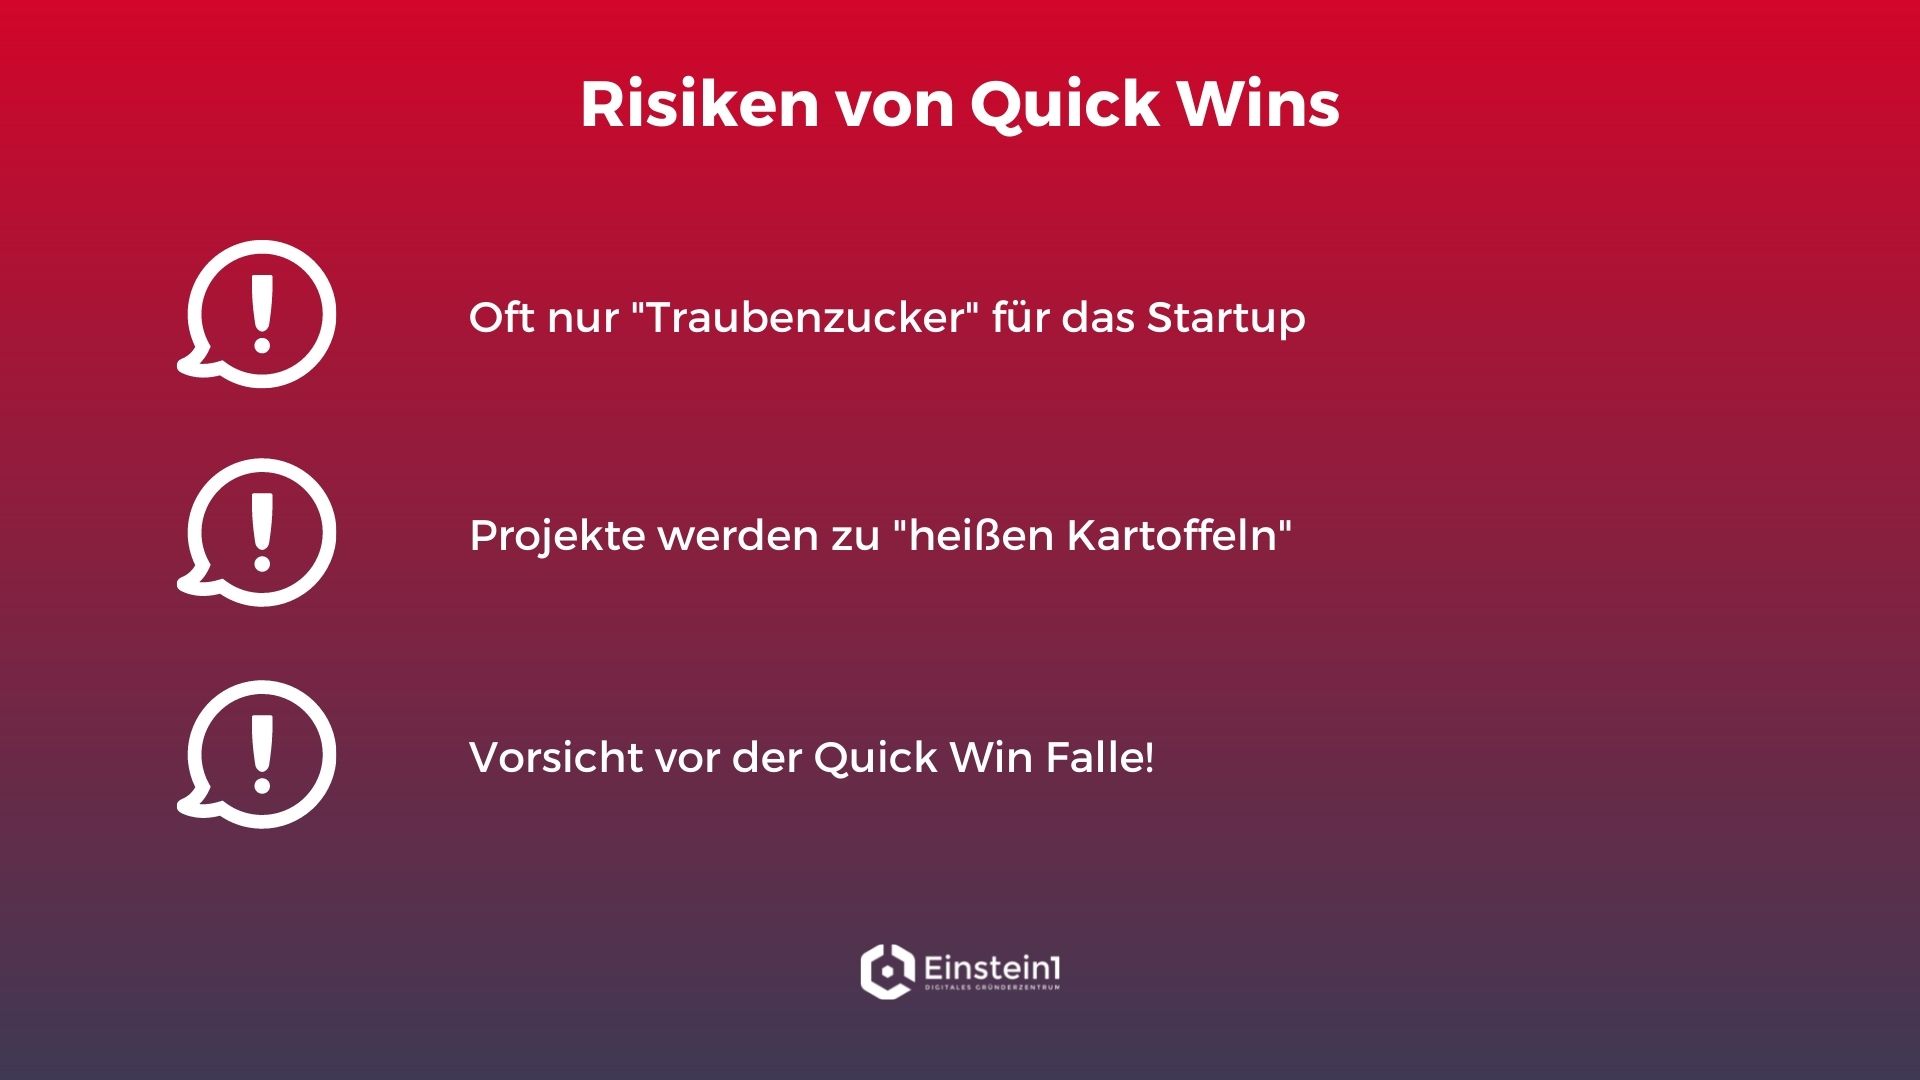 quick-wins-risiken-einstein1